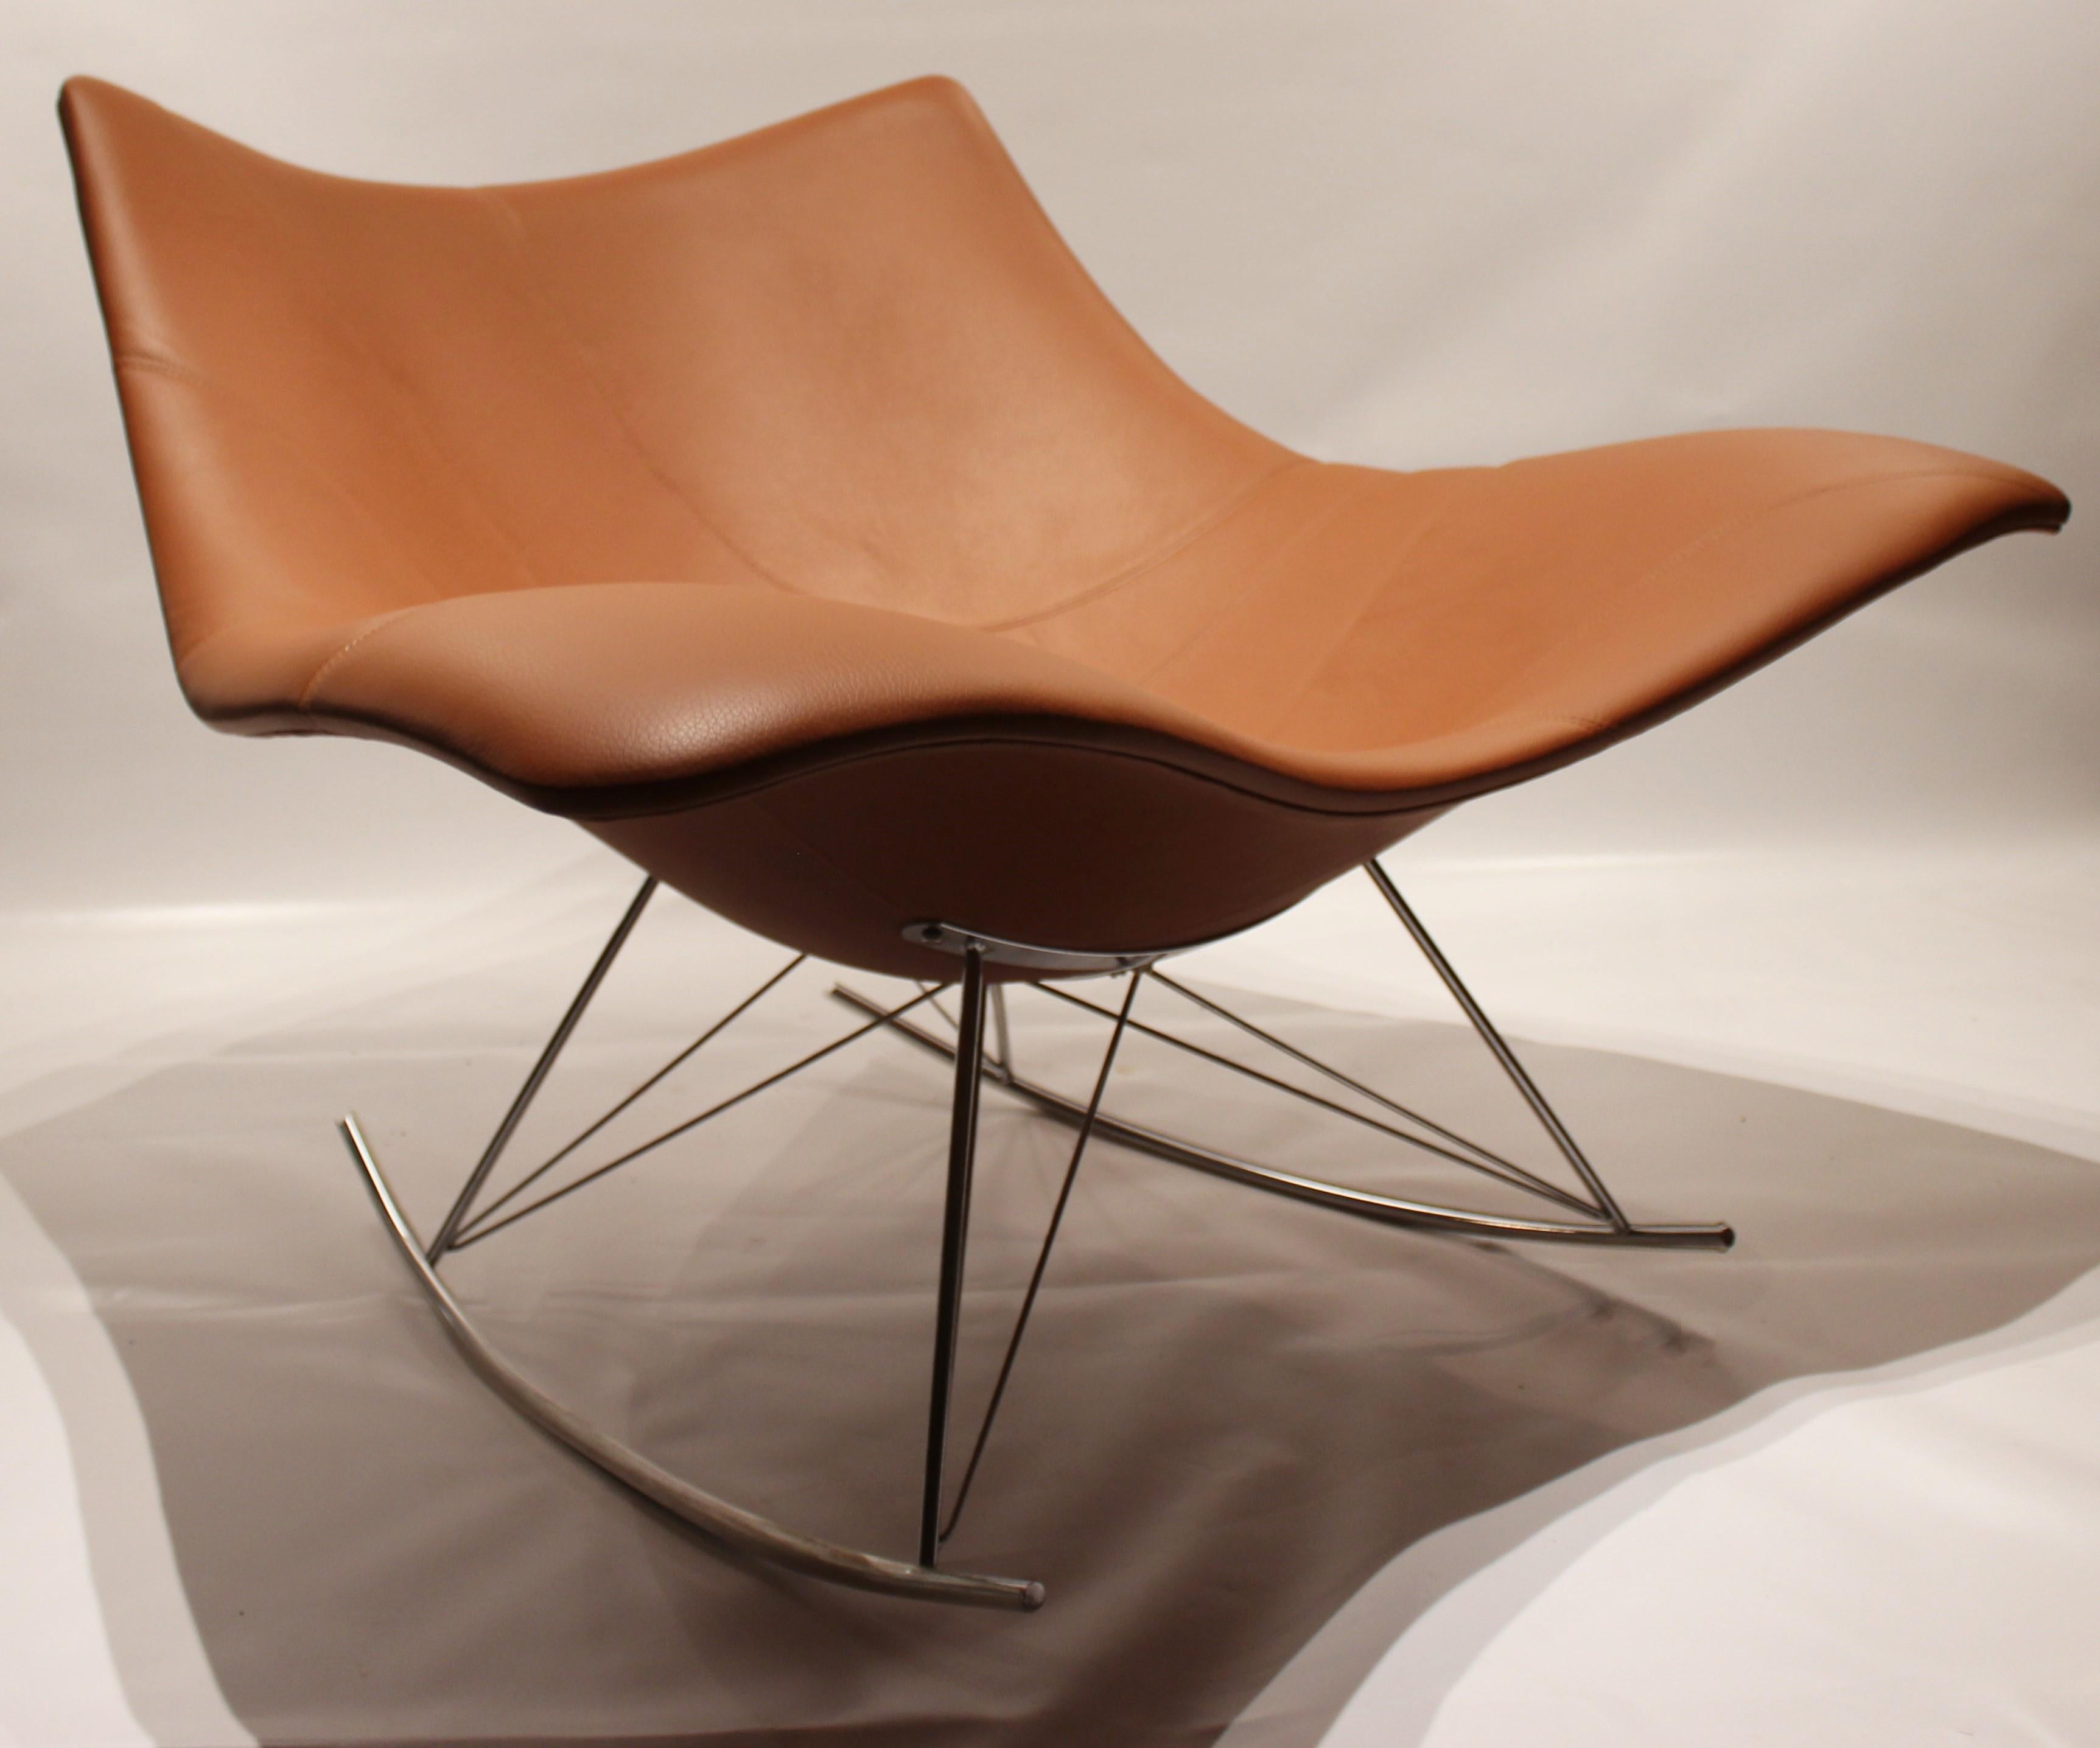 Chaise à bascule Stingray:: modèle 3510:: conçue par Thomas Pedersen et fabriquée par Fredericia Furniture. Il est garni de cuir couleur cogence et d'un cadre en acrylique poli brillant. La chaise est en excellent état vintage.